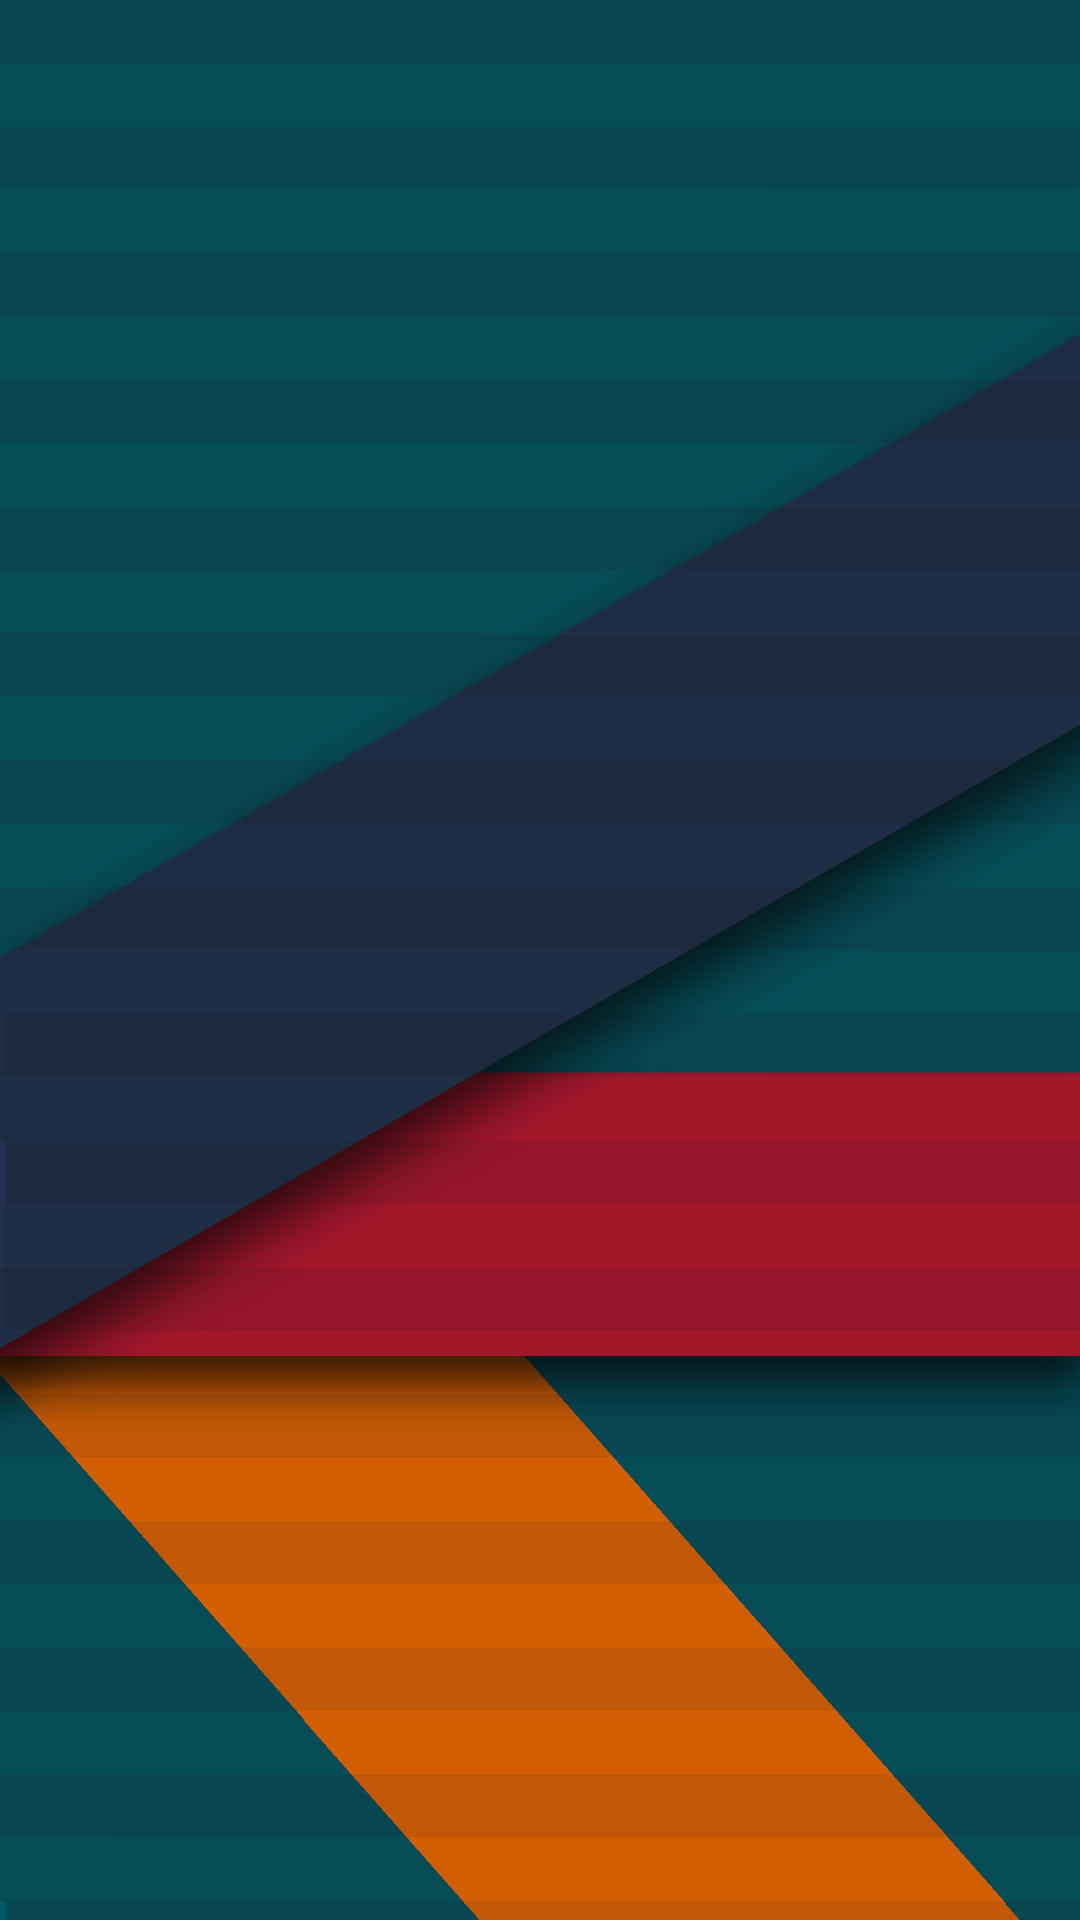 Et farverigt og grønt baggrund med et rødt, orange og blå stribet mønster